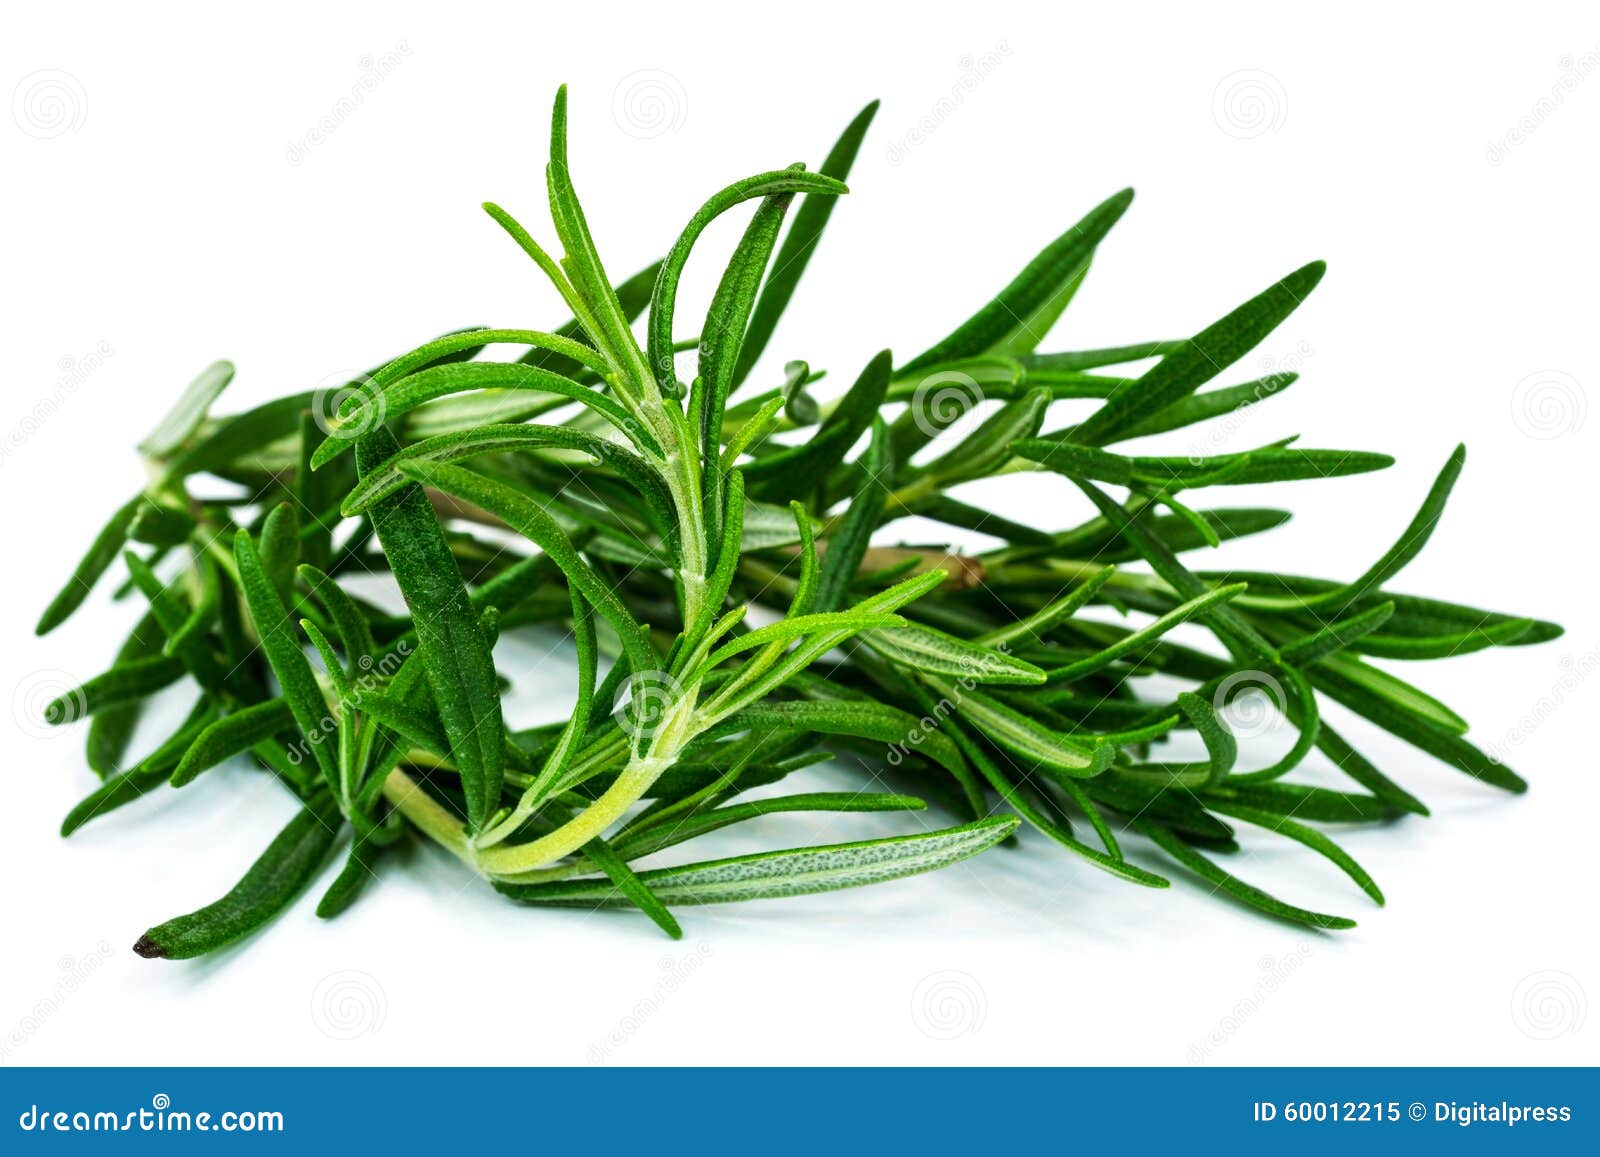 Rosemary Plant, sluit omhoog van groen kruid op witte achtergrond